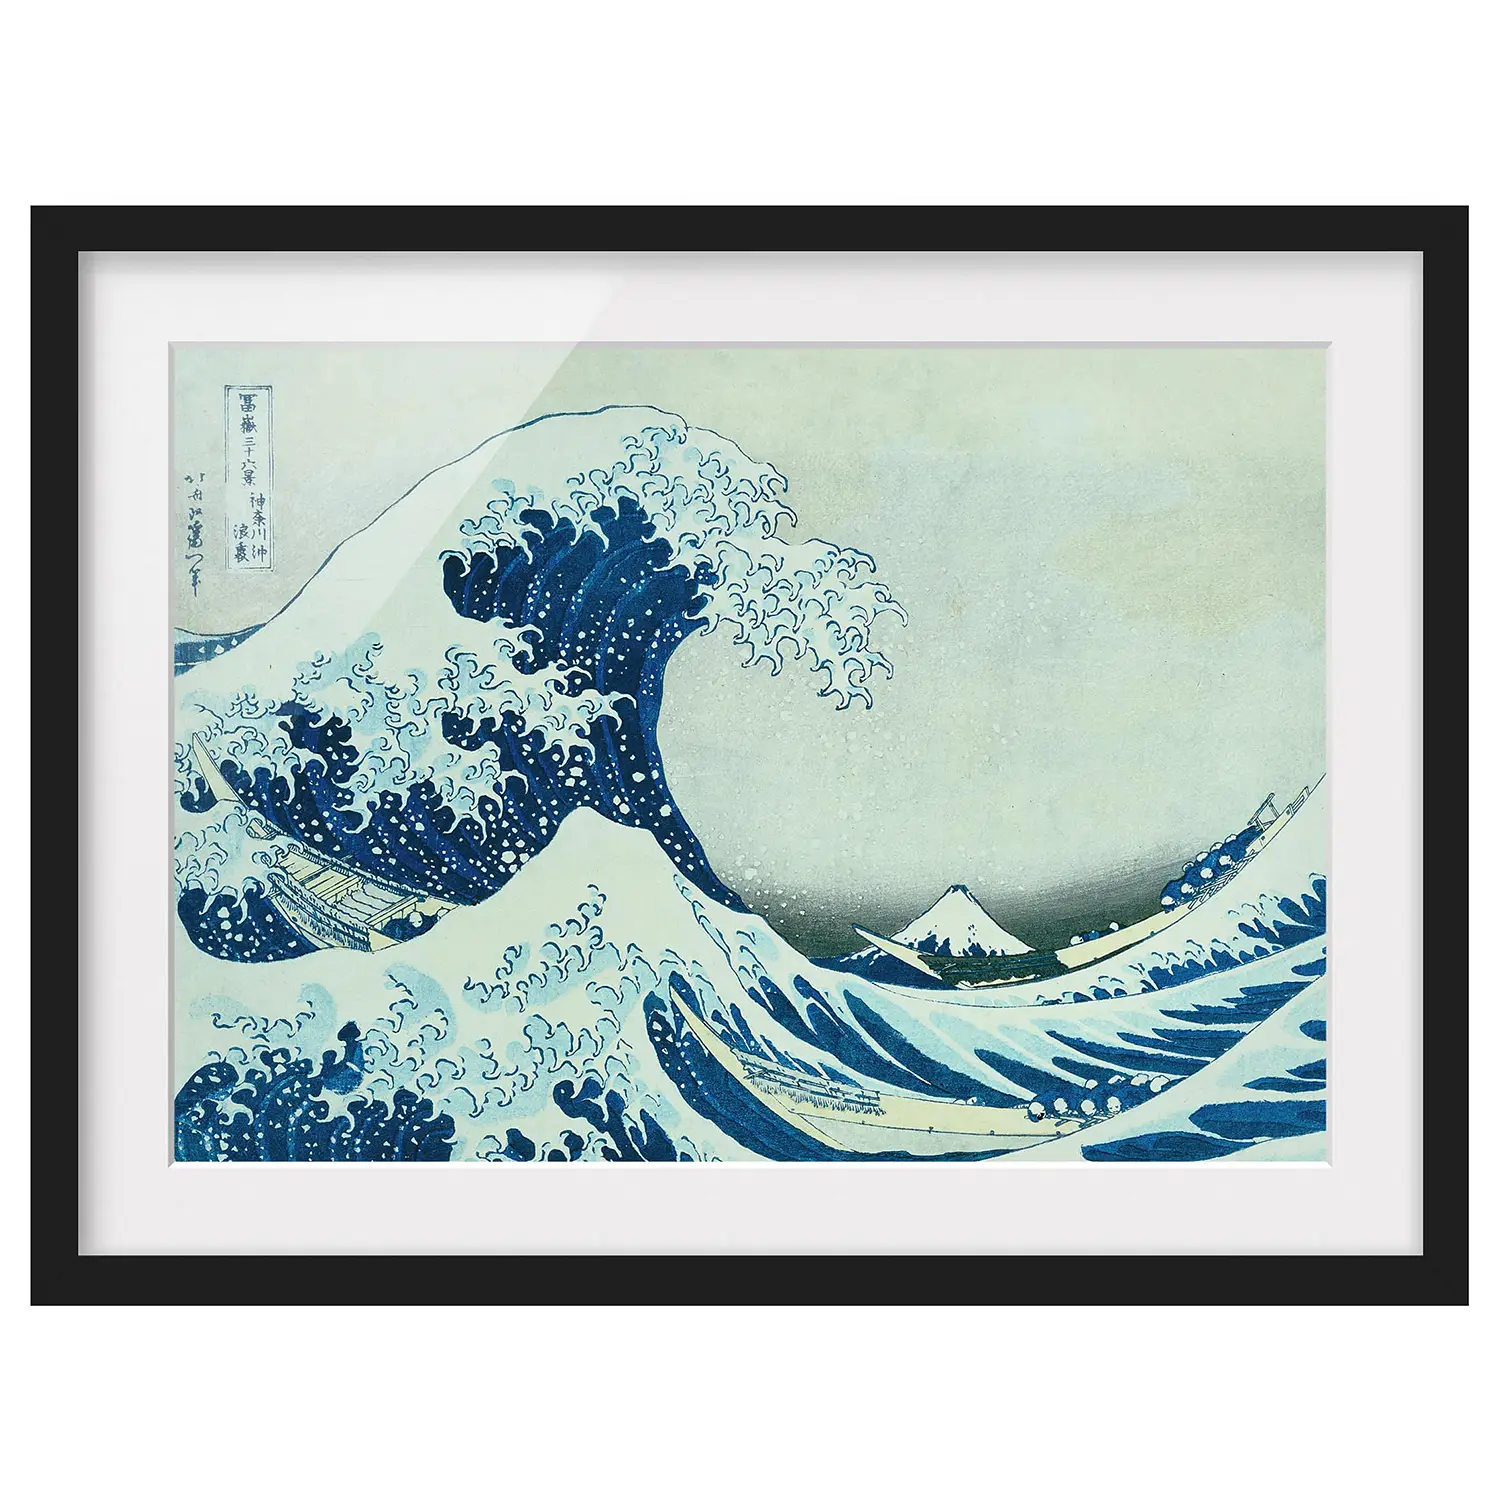 Welle von Bild II Kanagawa Die Grosse